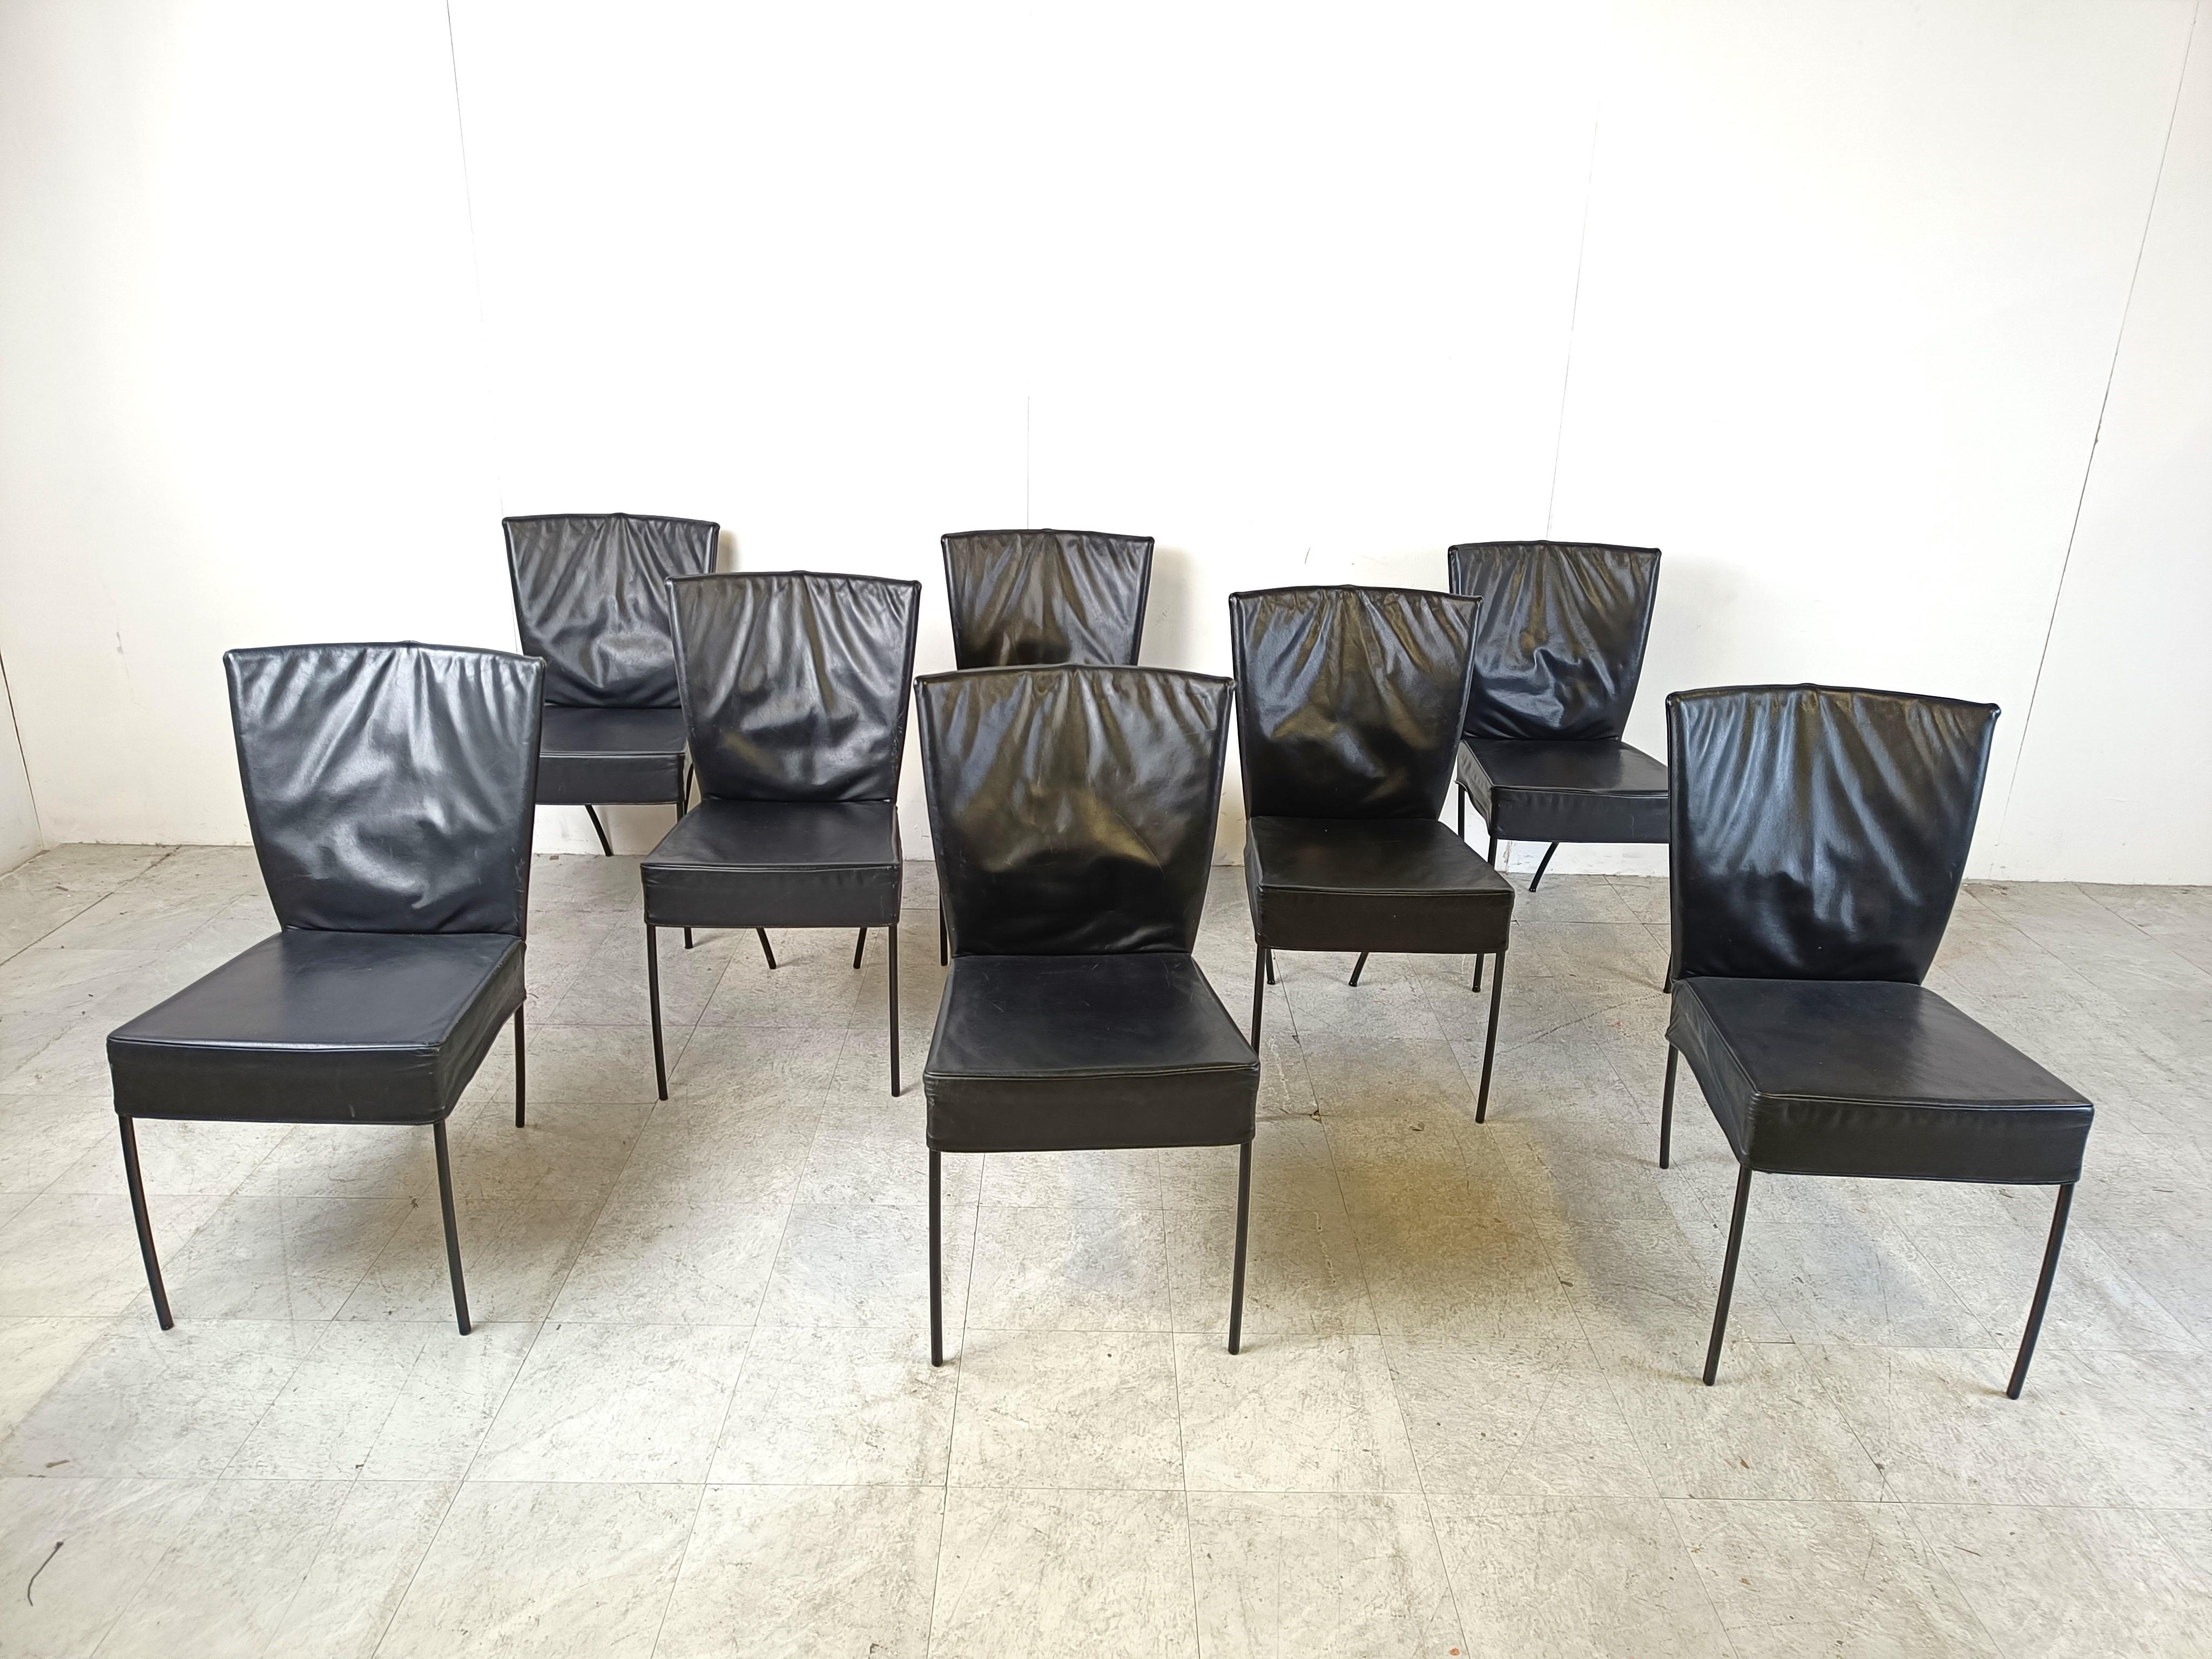 Ensemble de 8 chaises de salle à manger courbées en cuir exquis à la manière de Gerard DEN pour Montis.

Magnifique design tout en courbes composé d'un épais revêtement en cuir et d'un cadre en métal noir.

Design/One

Années 1980 -